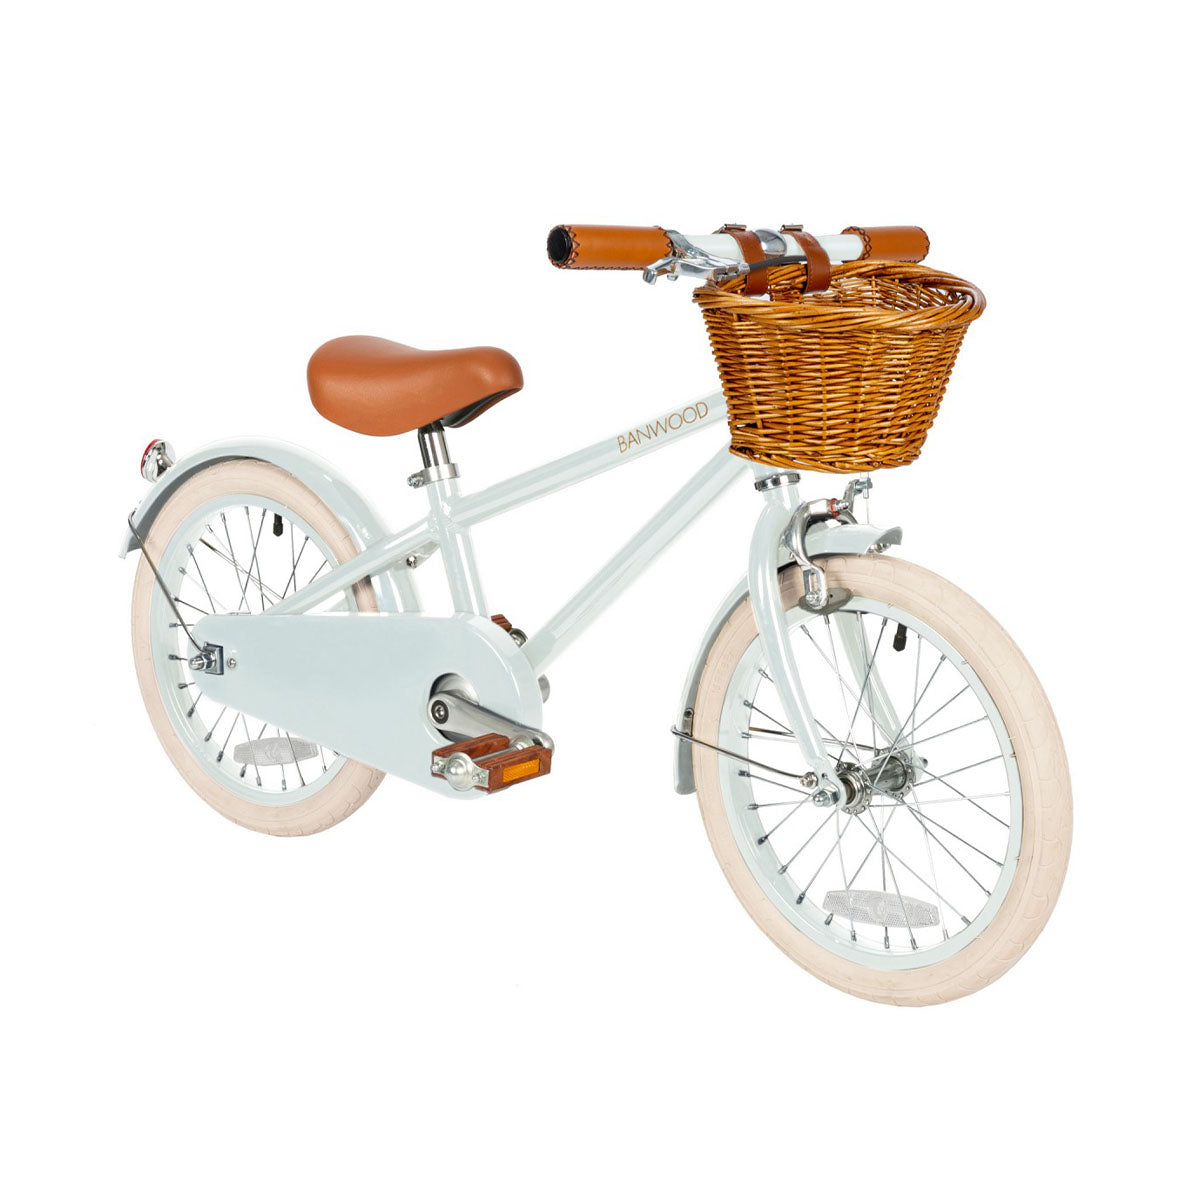 Deze leuke Banwood fiets in classic vintage pale mint is een superleuke kinderfiets met een retro design. Deze fiets heeft een Scandi look en heeft unieke trappers van palissanderhout. Ook heeft de fiets een mooie lichtgroene kleur. VanZus